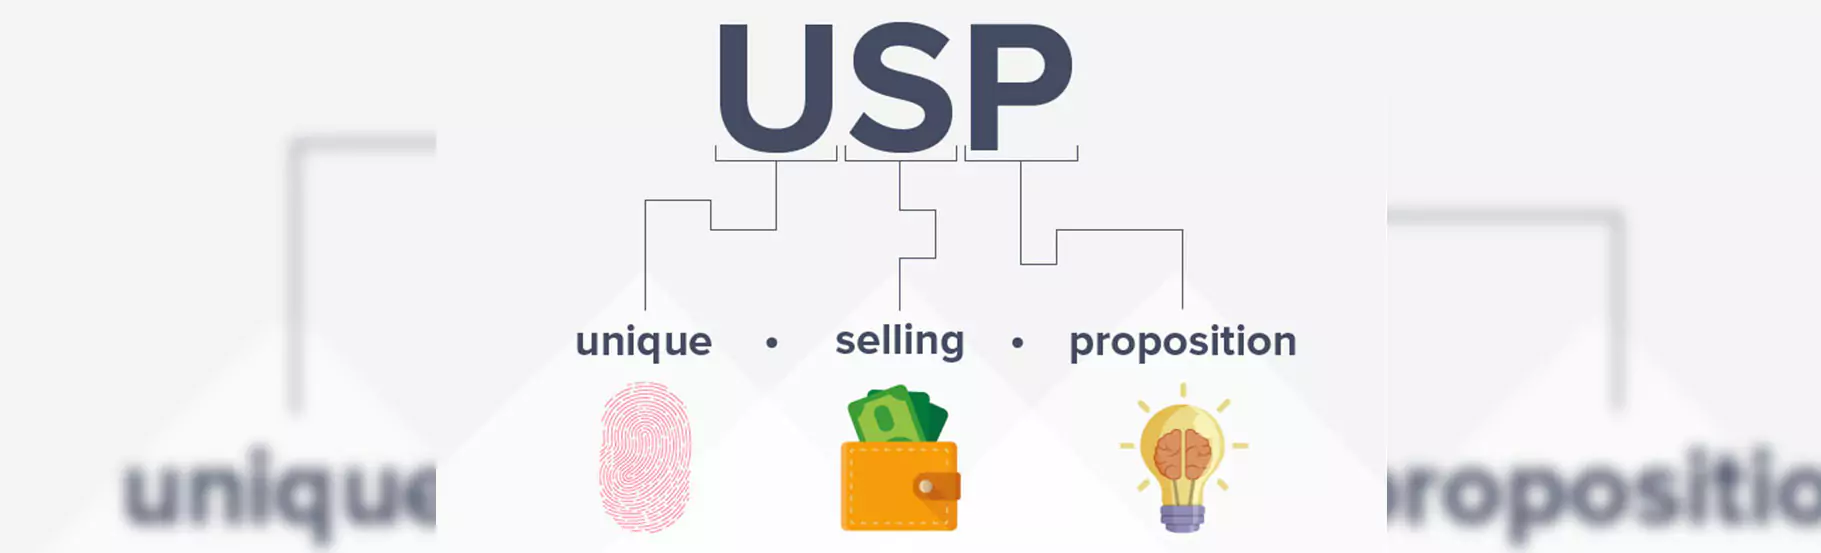 usp-gco-unique-selling-proposition-pc